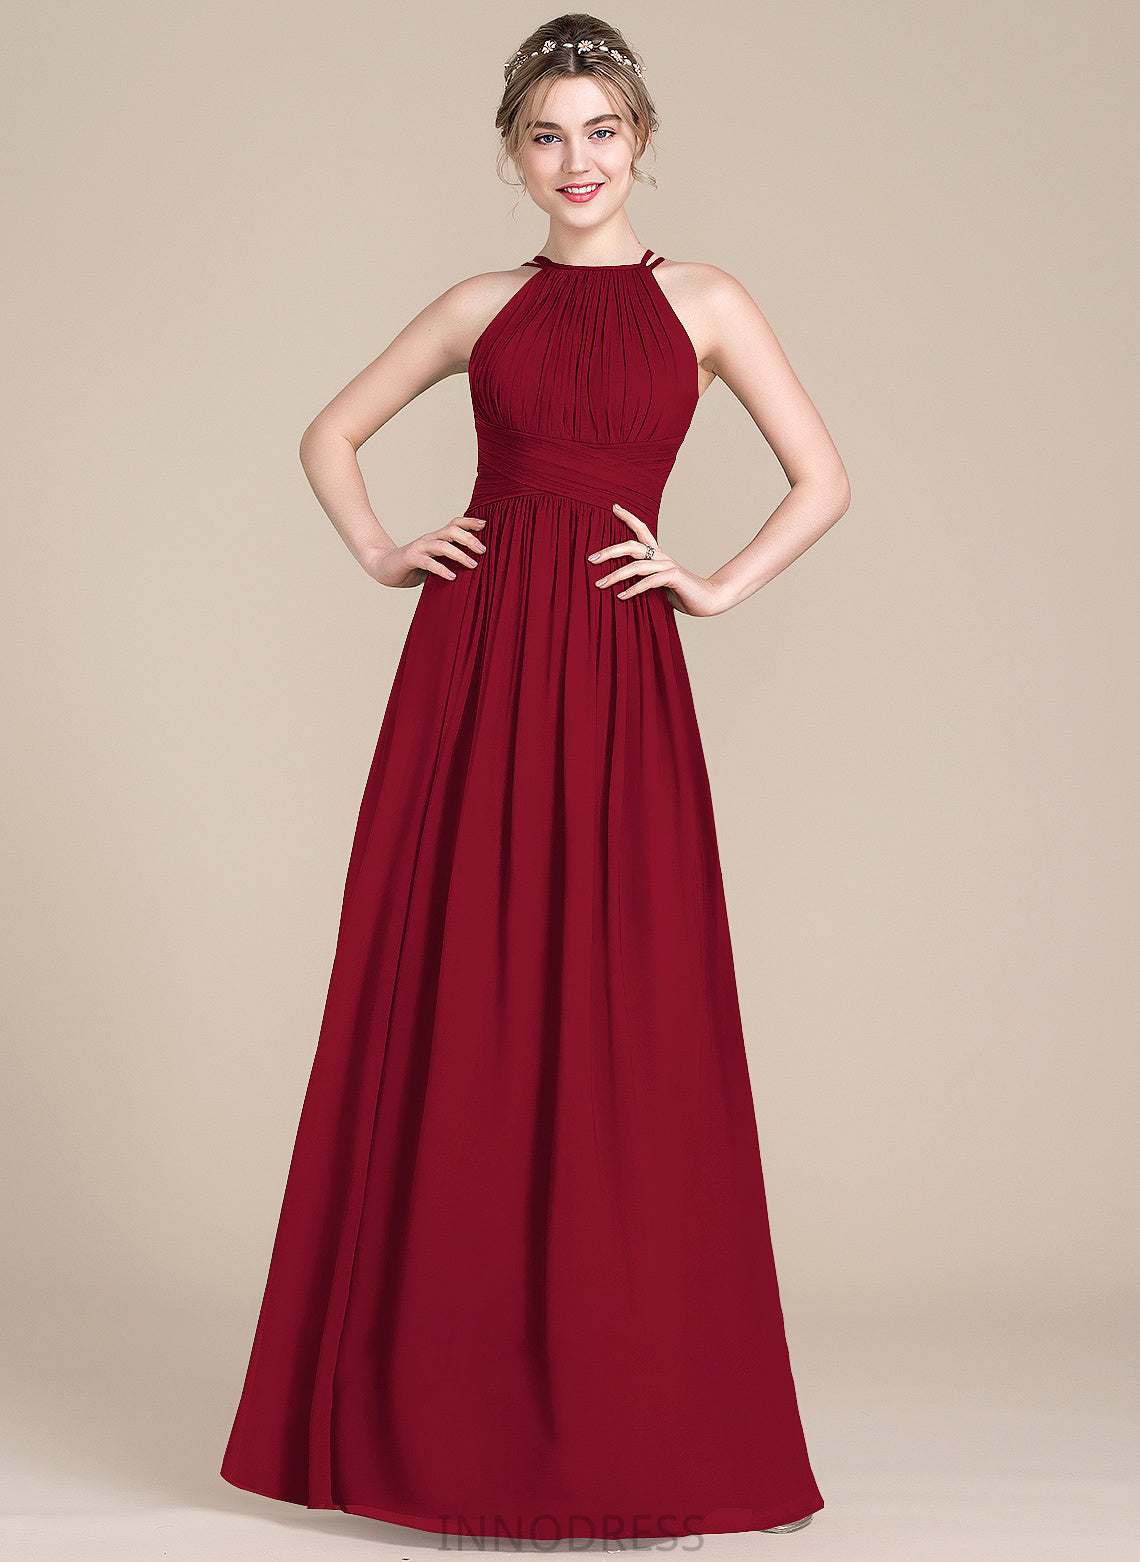 Fabric Silhouette A-Line Floor-Length ScoopNeck Neckline Length Embellishment Ruffle Helena Natural Waist A-Line/Princess